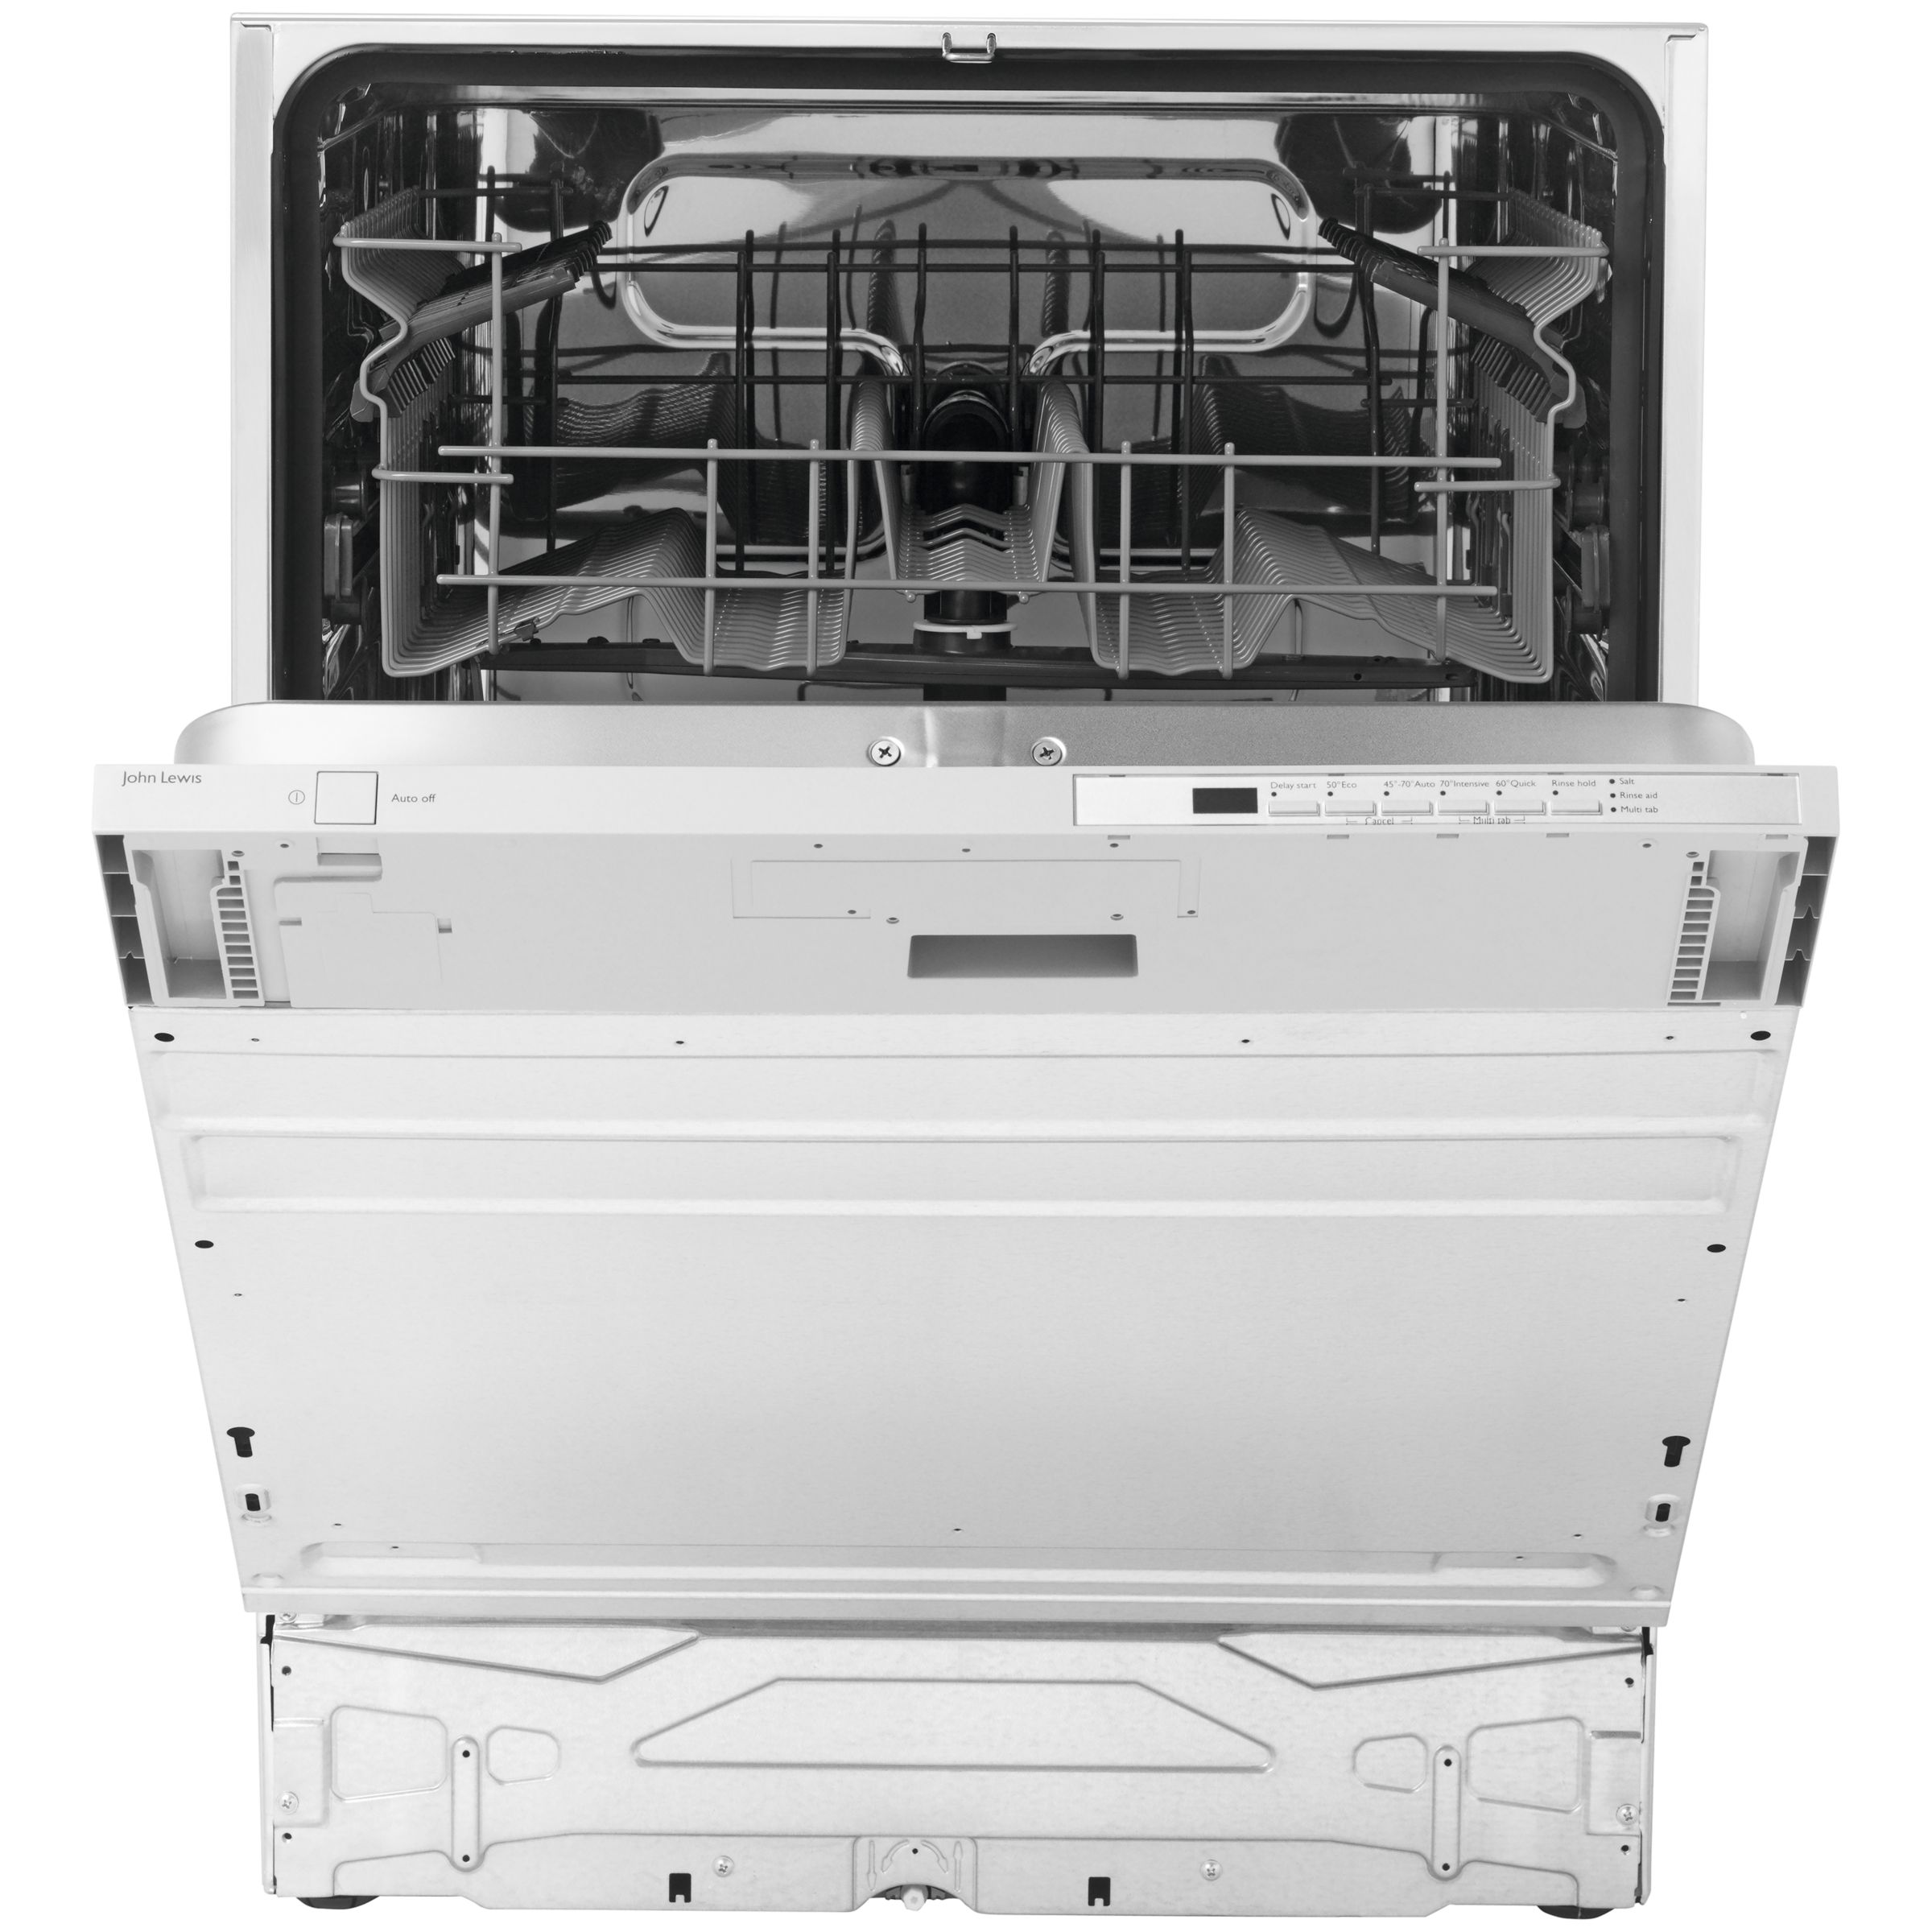 John Lewis JLBIDW1205 Integrated Dishwasher